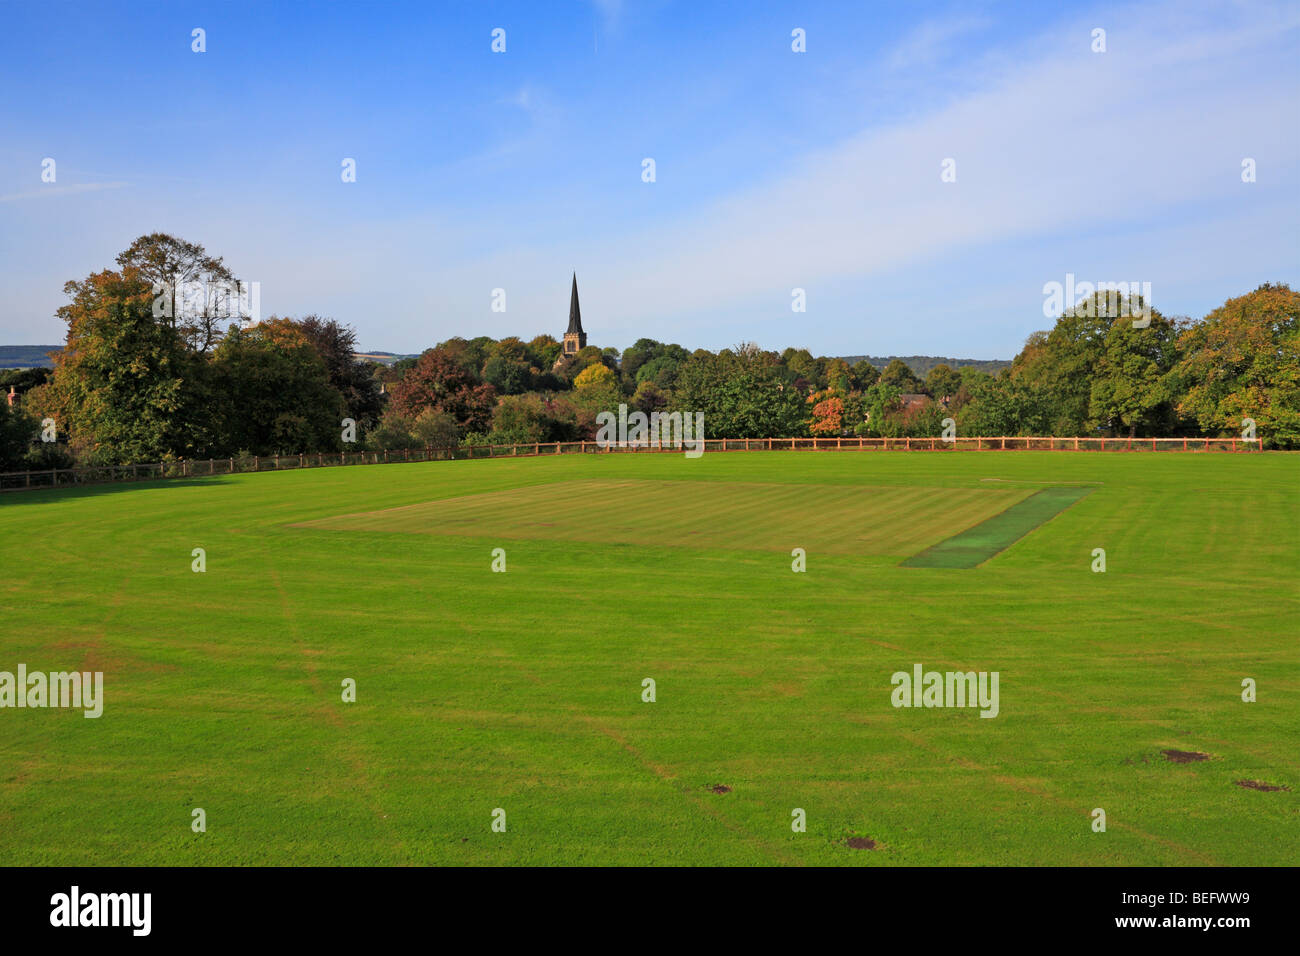 Das cricketfeld in Richtung Kirche der Heiligen Dreifaltigkeit, Wentworth, Rotherham, South Yorkshire, England, UK. Stockfoto